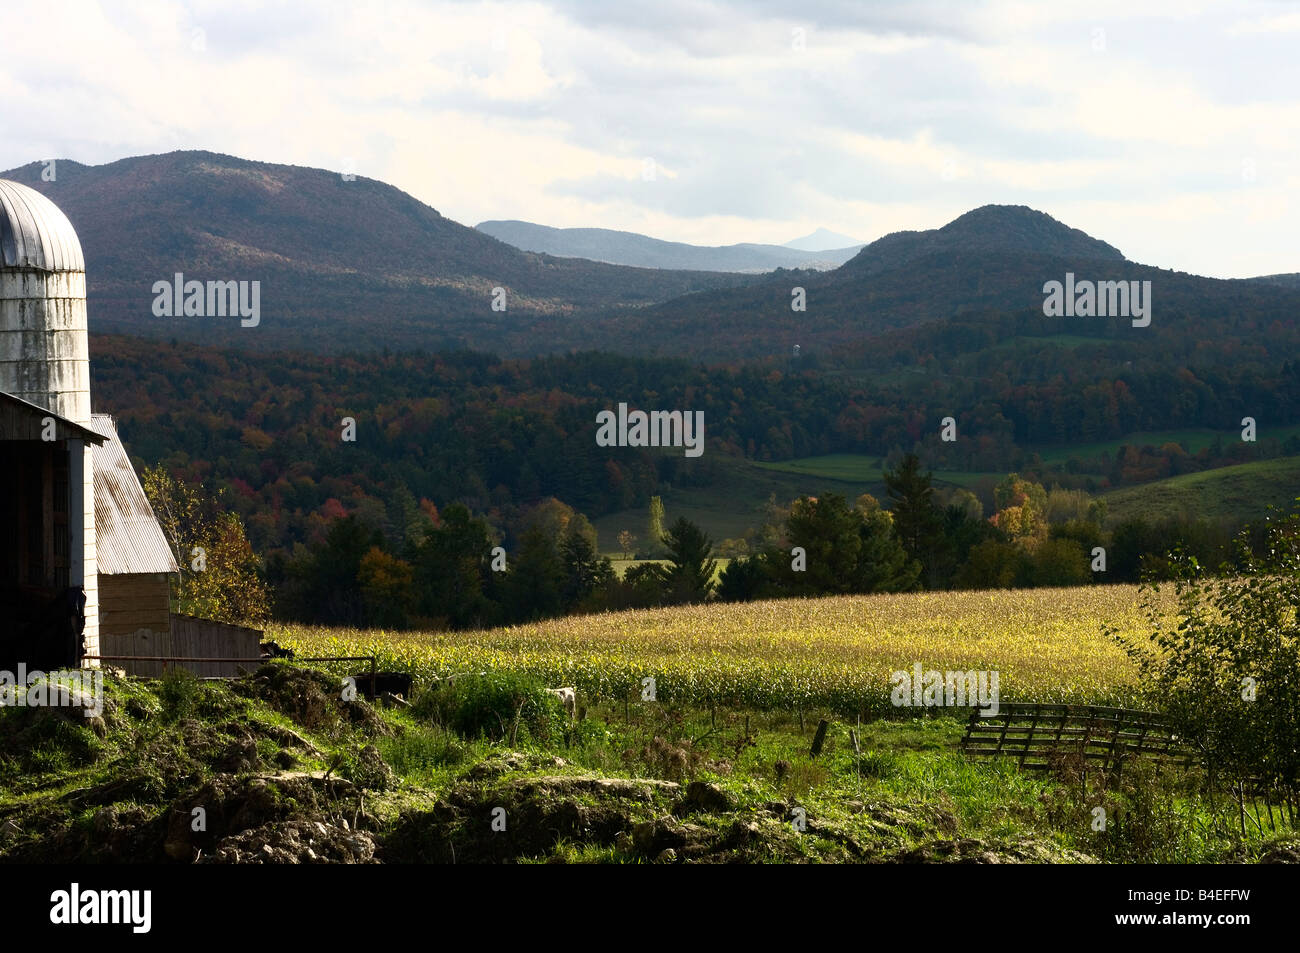 Landschaftlich reizvolle ländliche Tal in den Green Mountains von Vermont mit Vordergrund Fokus am Rand der Scheune und Silo. Stockfoto